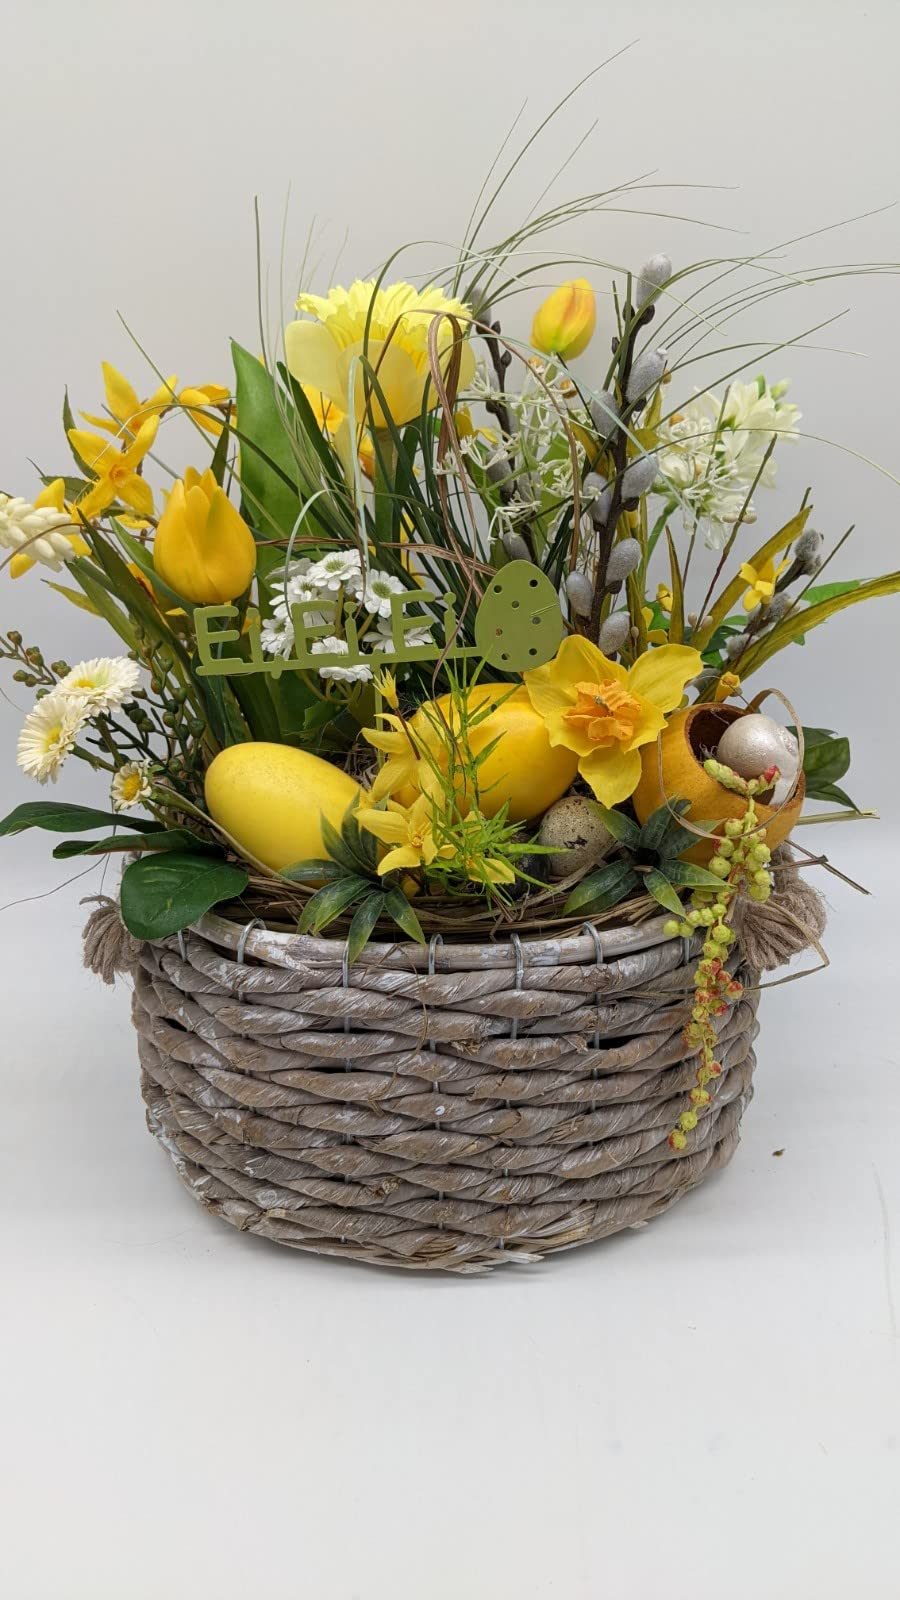 Ostergesteck Frühlingsgesteck Schriftzug Stecker Tulpen Narzisse Eier Weidenkätzchen Gräser gelb grün